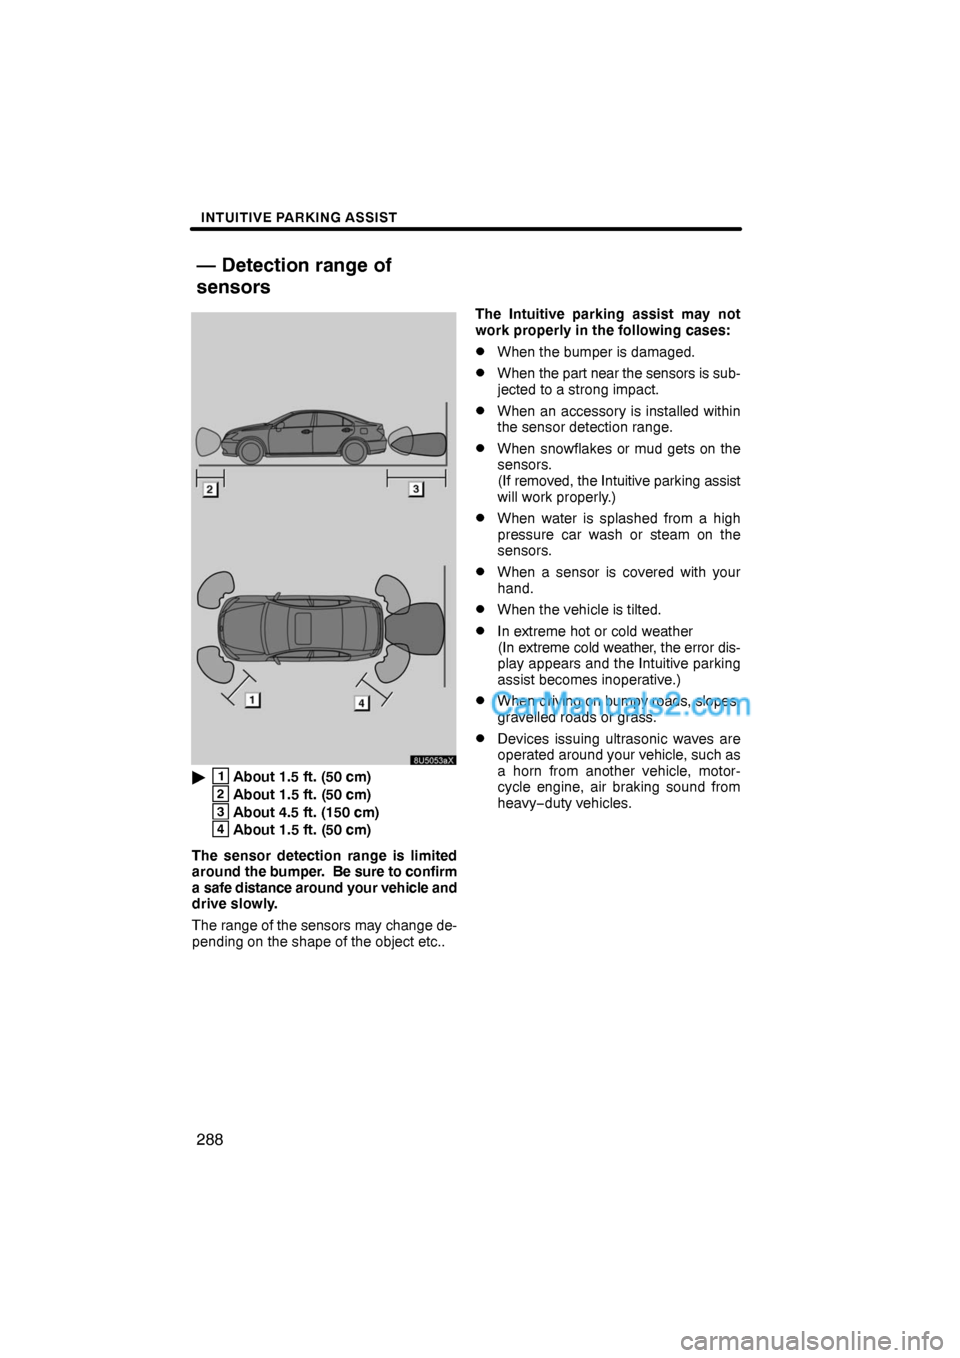 Lexus ES350 2009  Intuitive Parking Assist INTUITIVE PARKING ASSIST
288
1About 1.5 ft. (50 cm)
2About 1.5 ft. (50 cm)
3About 4.5 ft. (150 cm)
4About 1.5 ft. (50 cm)
The sensor detection range is limited
around the bumper.  Be sure to confirm
